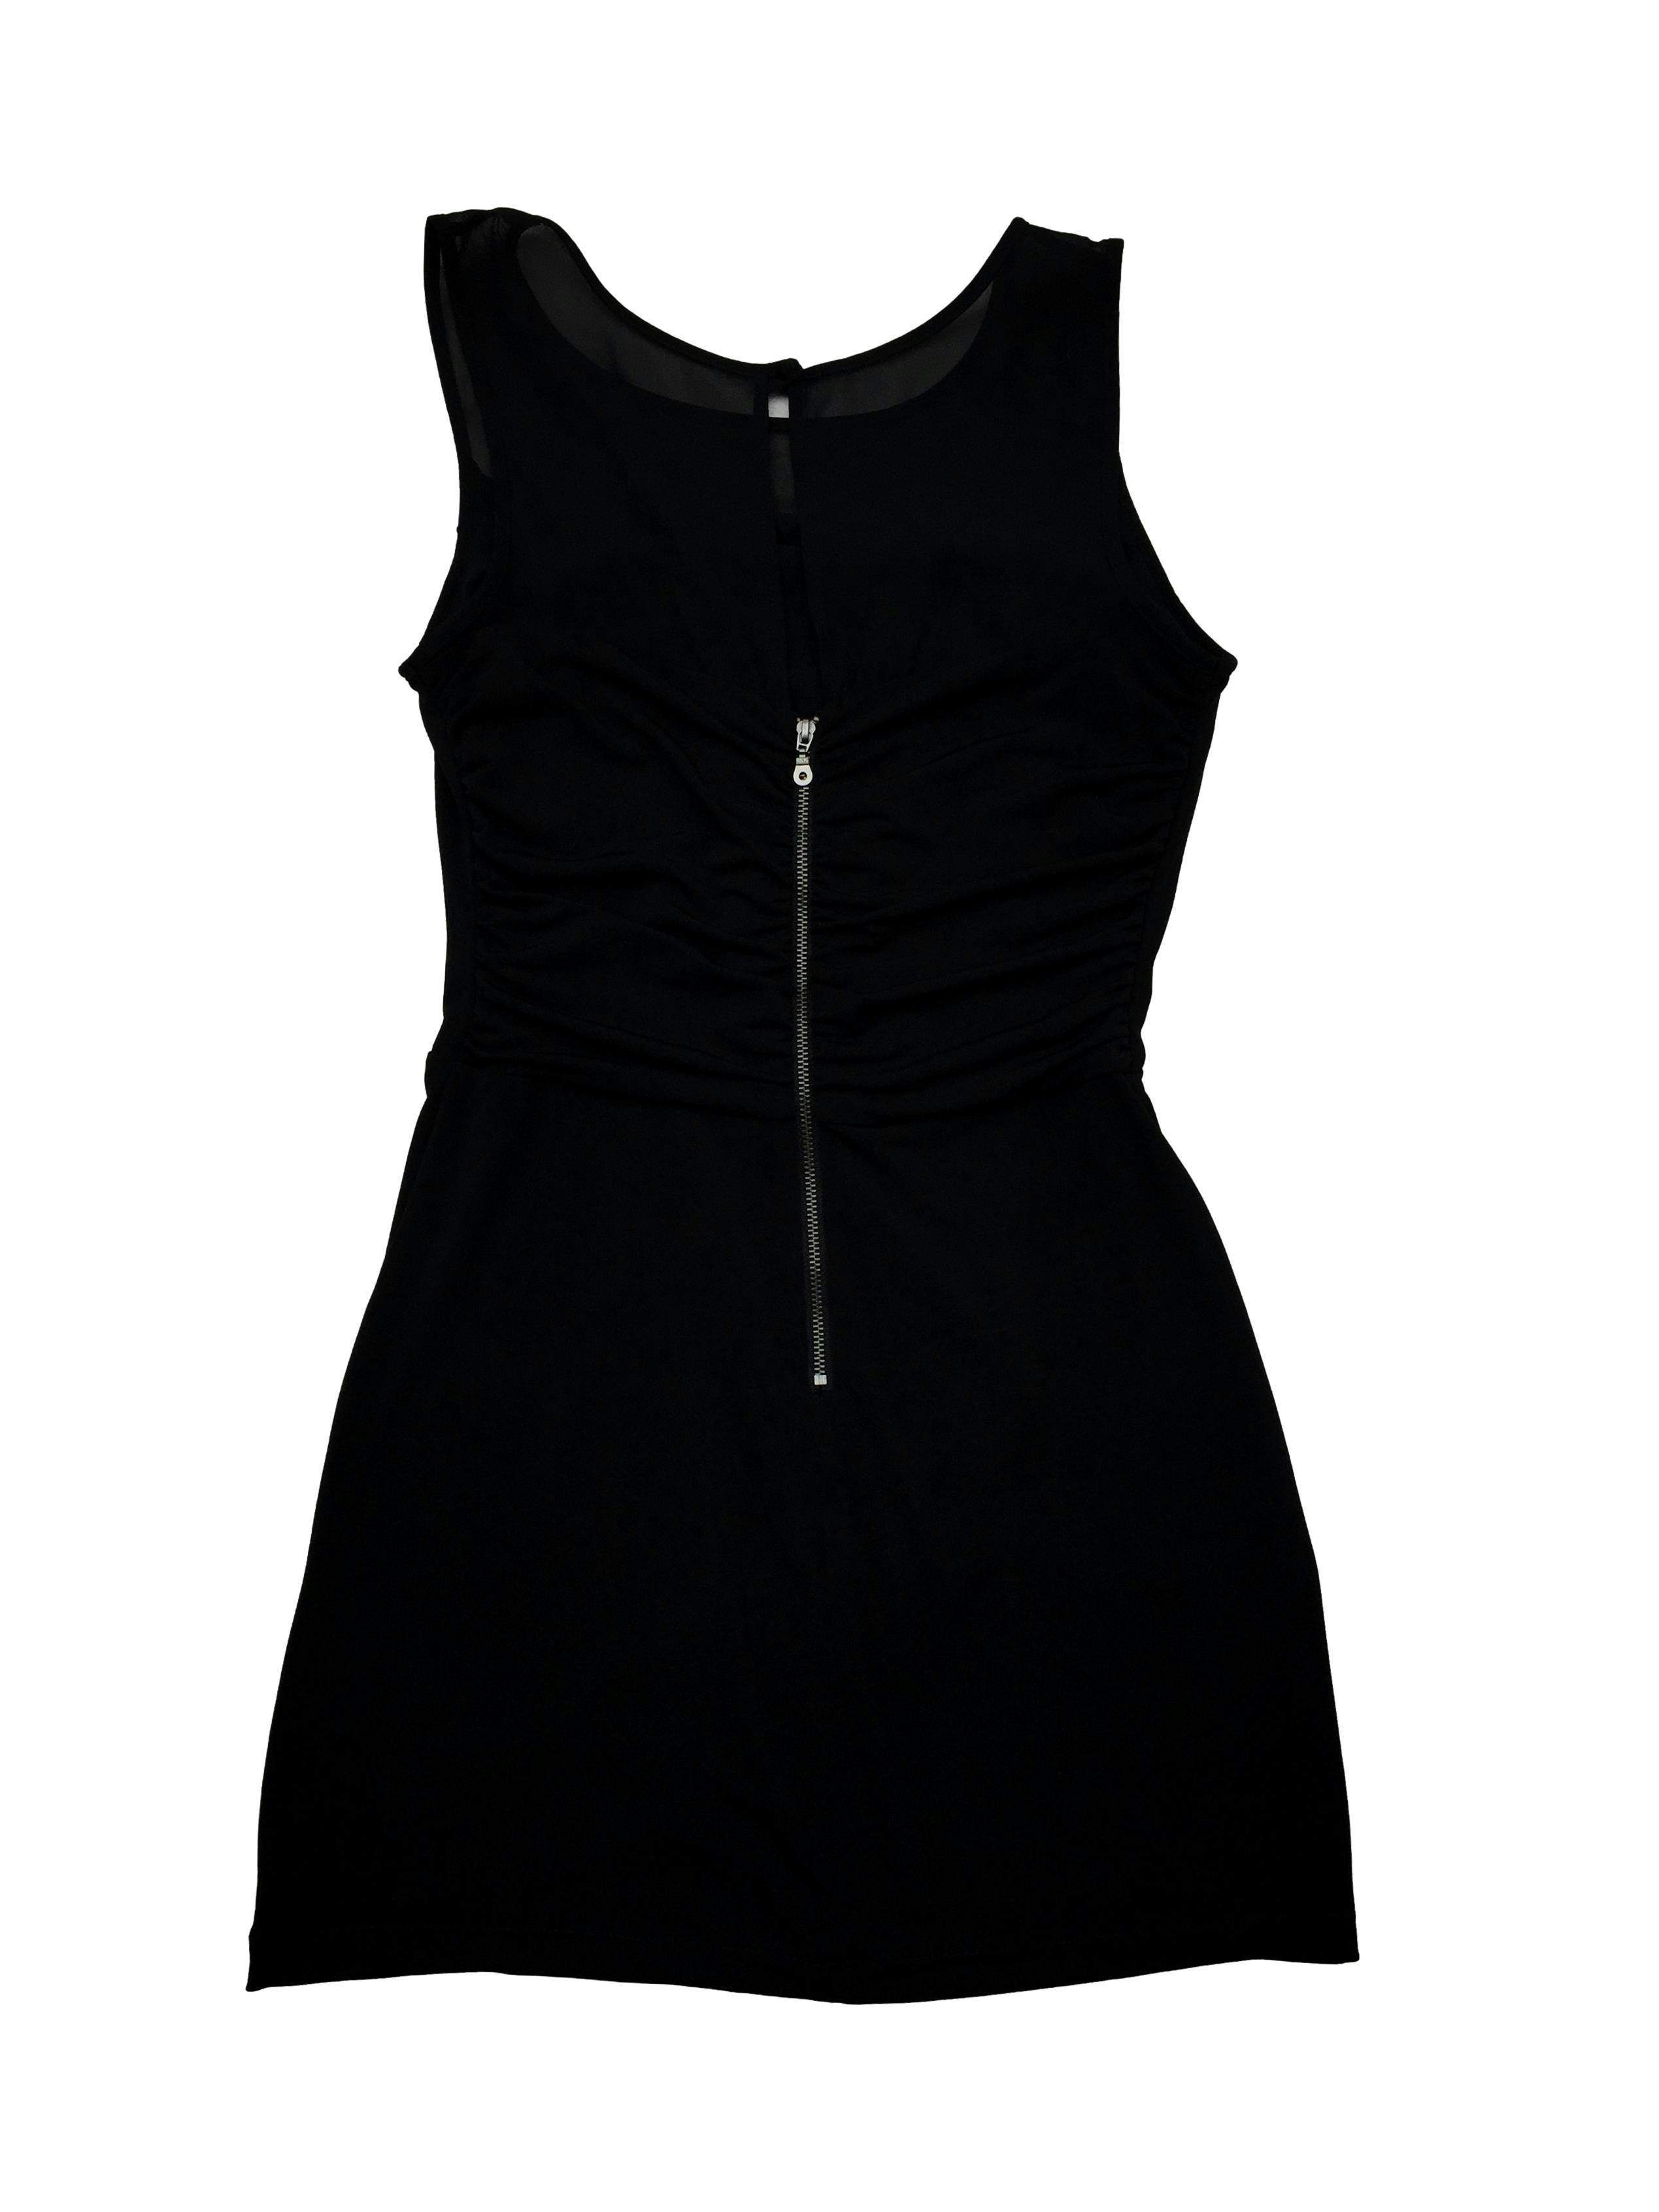 Vestido negro Maxancleo tela stretch drapeada, superior de gasa y cierre posterior. Busto: 86cm, Largo 80cm